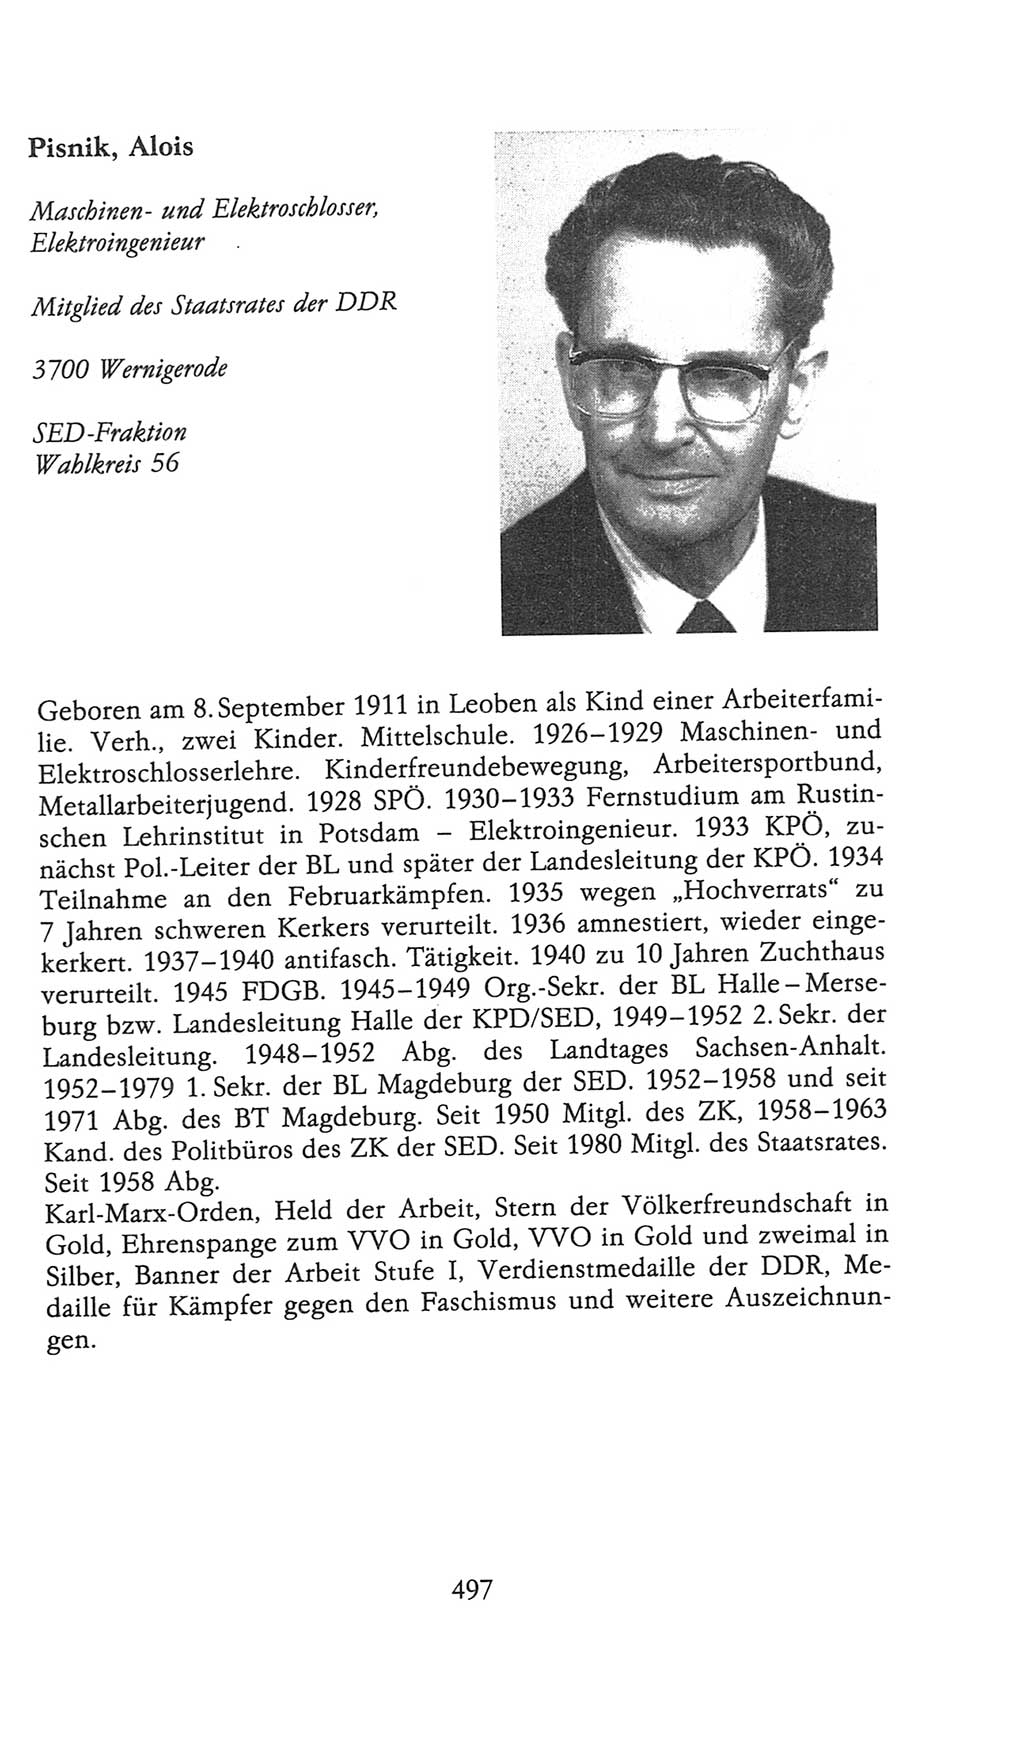 Volkskammer (VK) der Deutschen Demokratischen Republik (DDR), 9. Wahlperiode 1986-1990, Seite 497 (VK. DDR 9. WP. 1986-1990, S. 497)